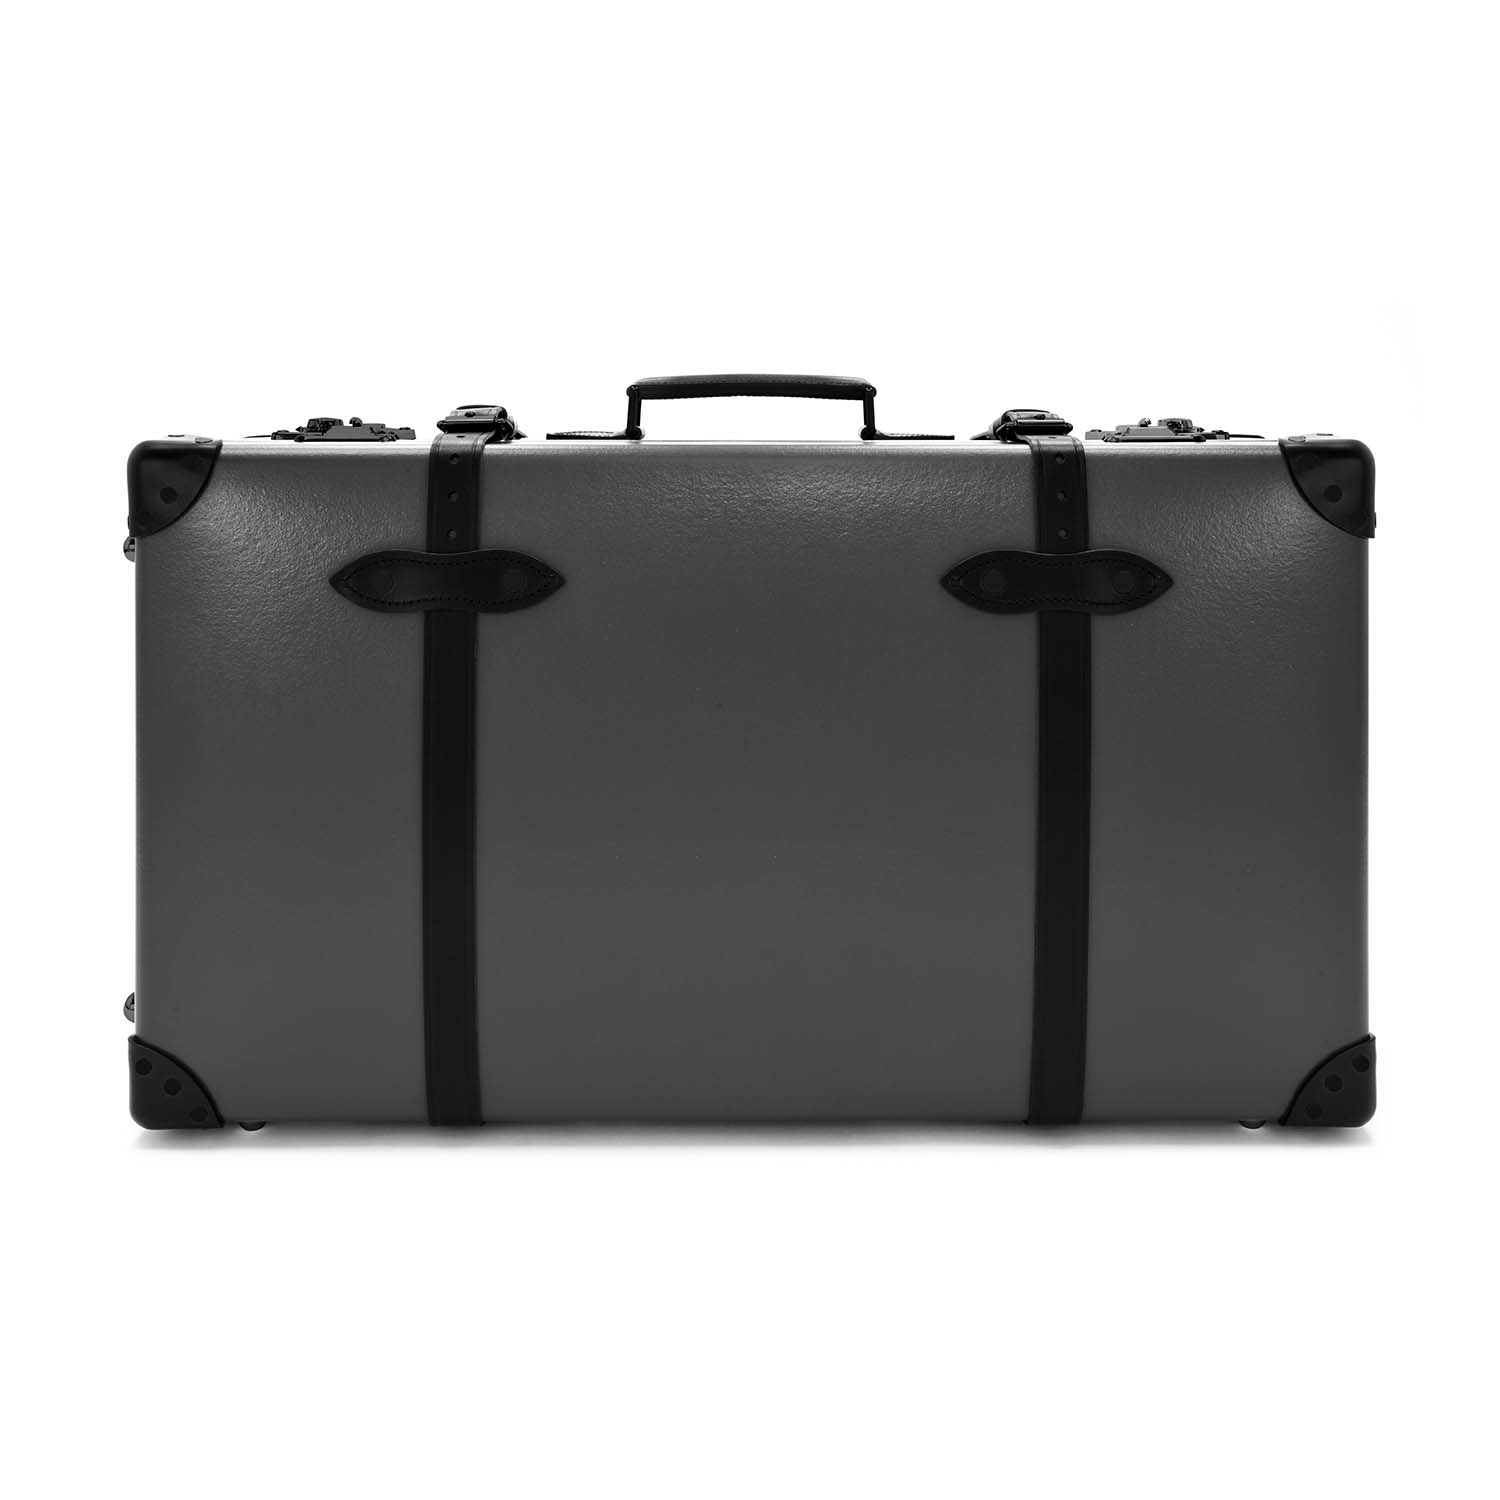 センテナリー · ラージスーツケース | チャコール/ブラック/ブラック